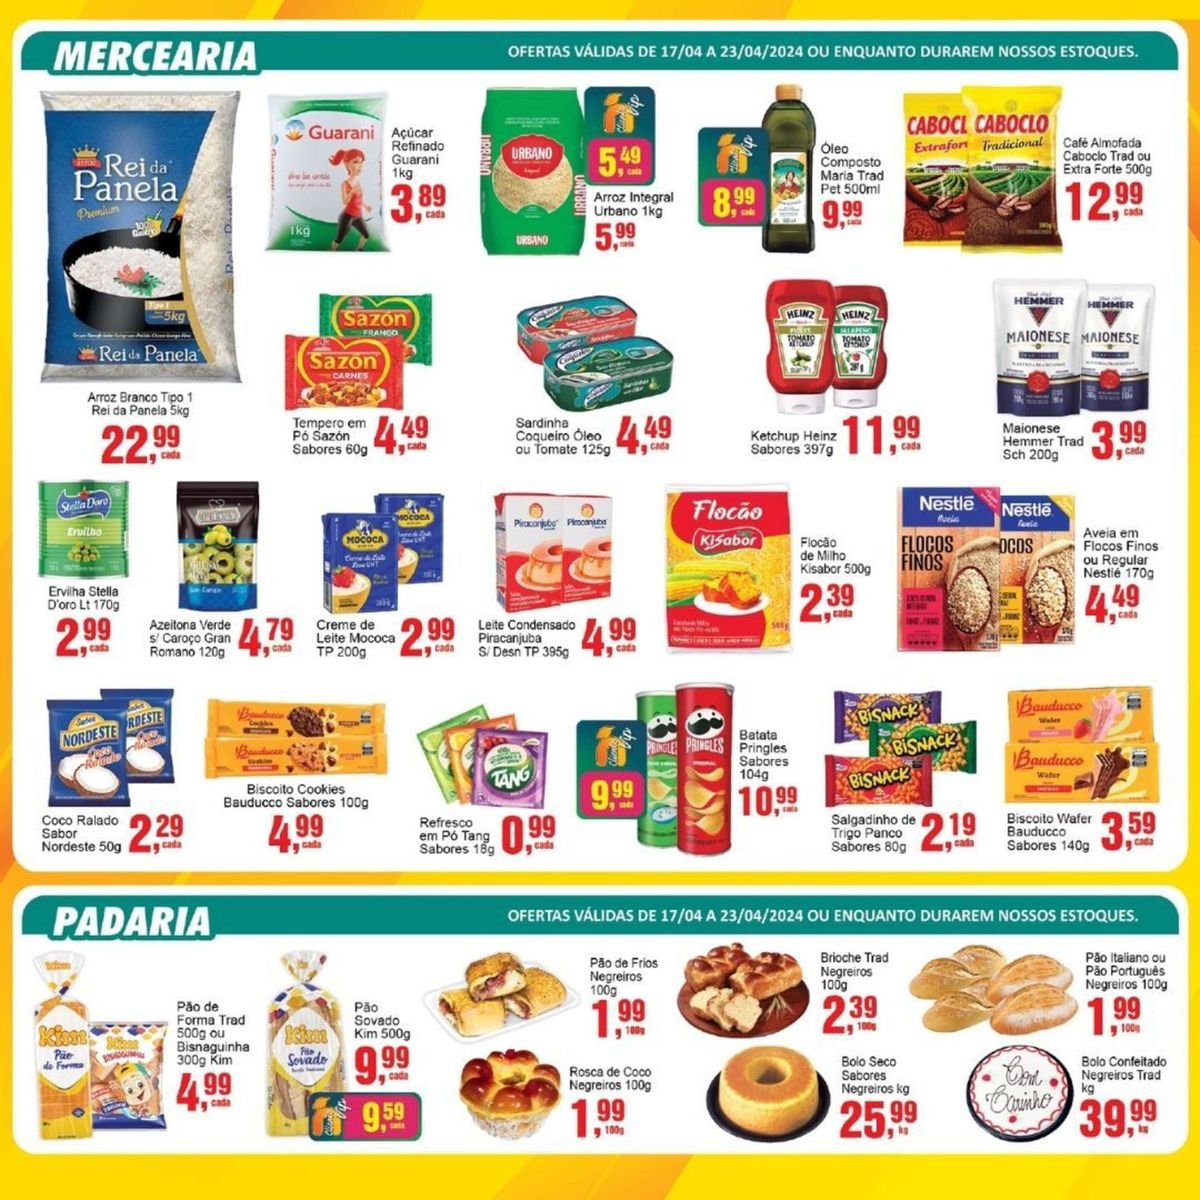 Supermercado Negreiros - Promoções de Mercearia e Padaria